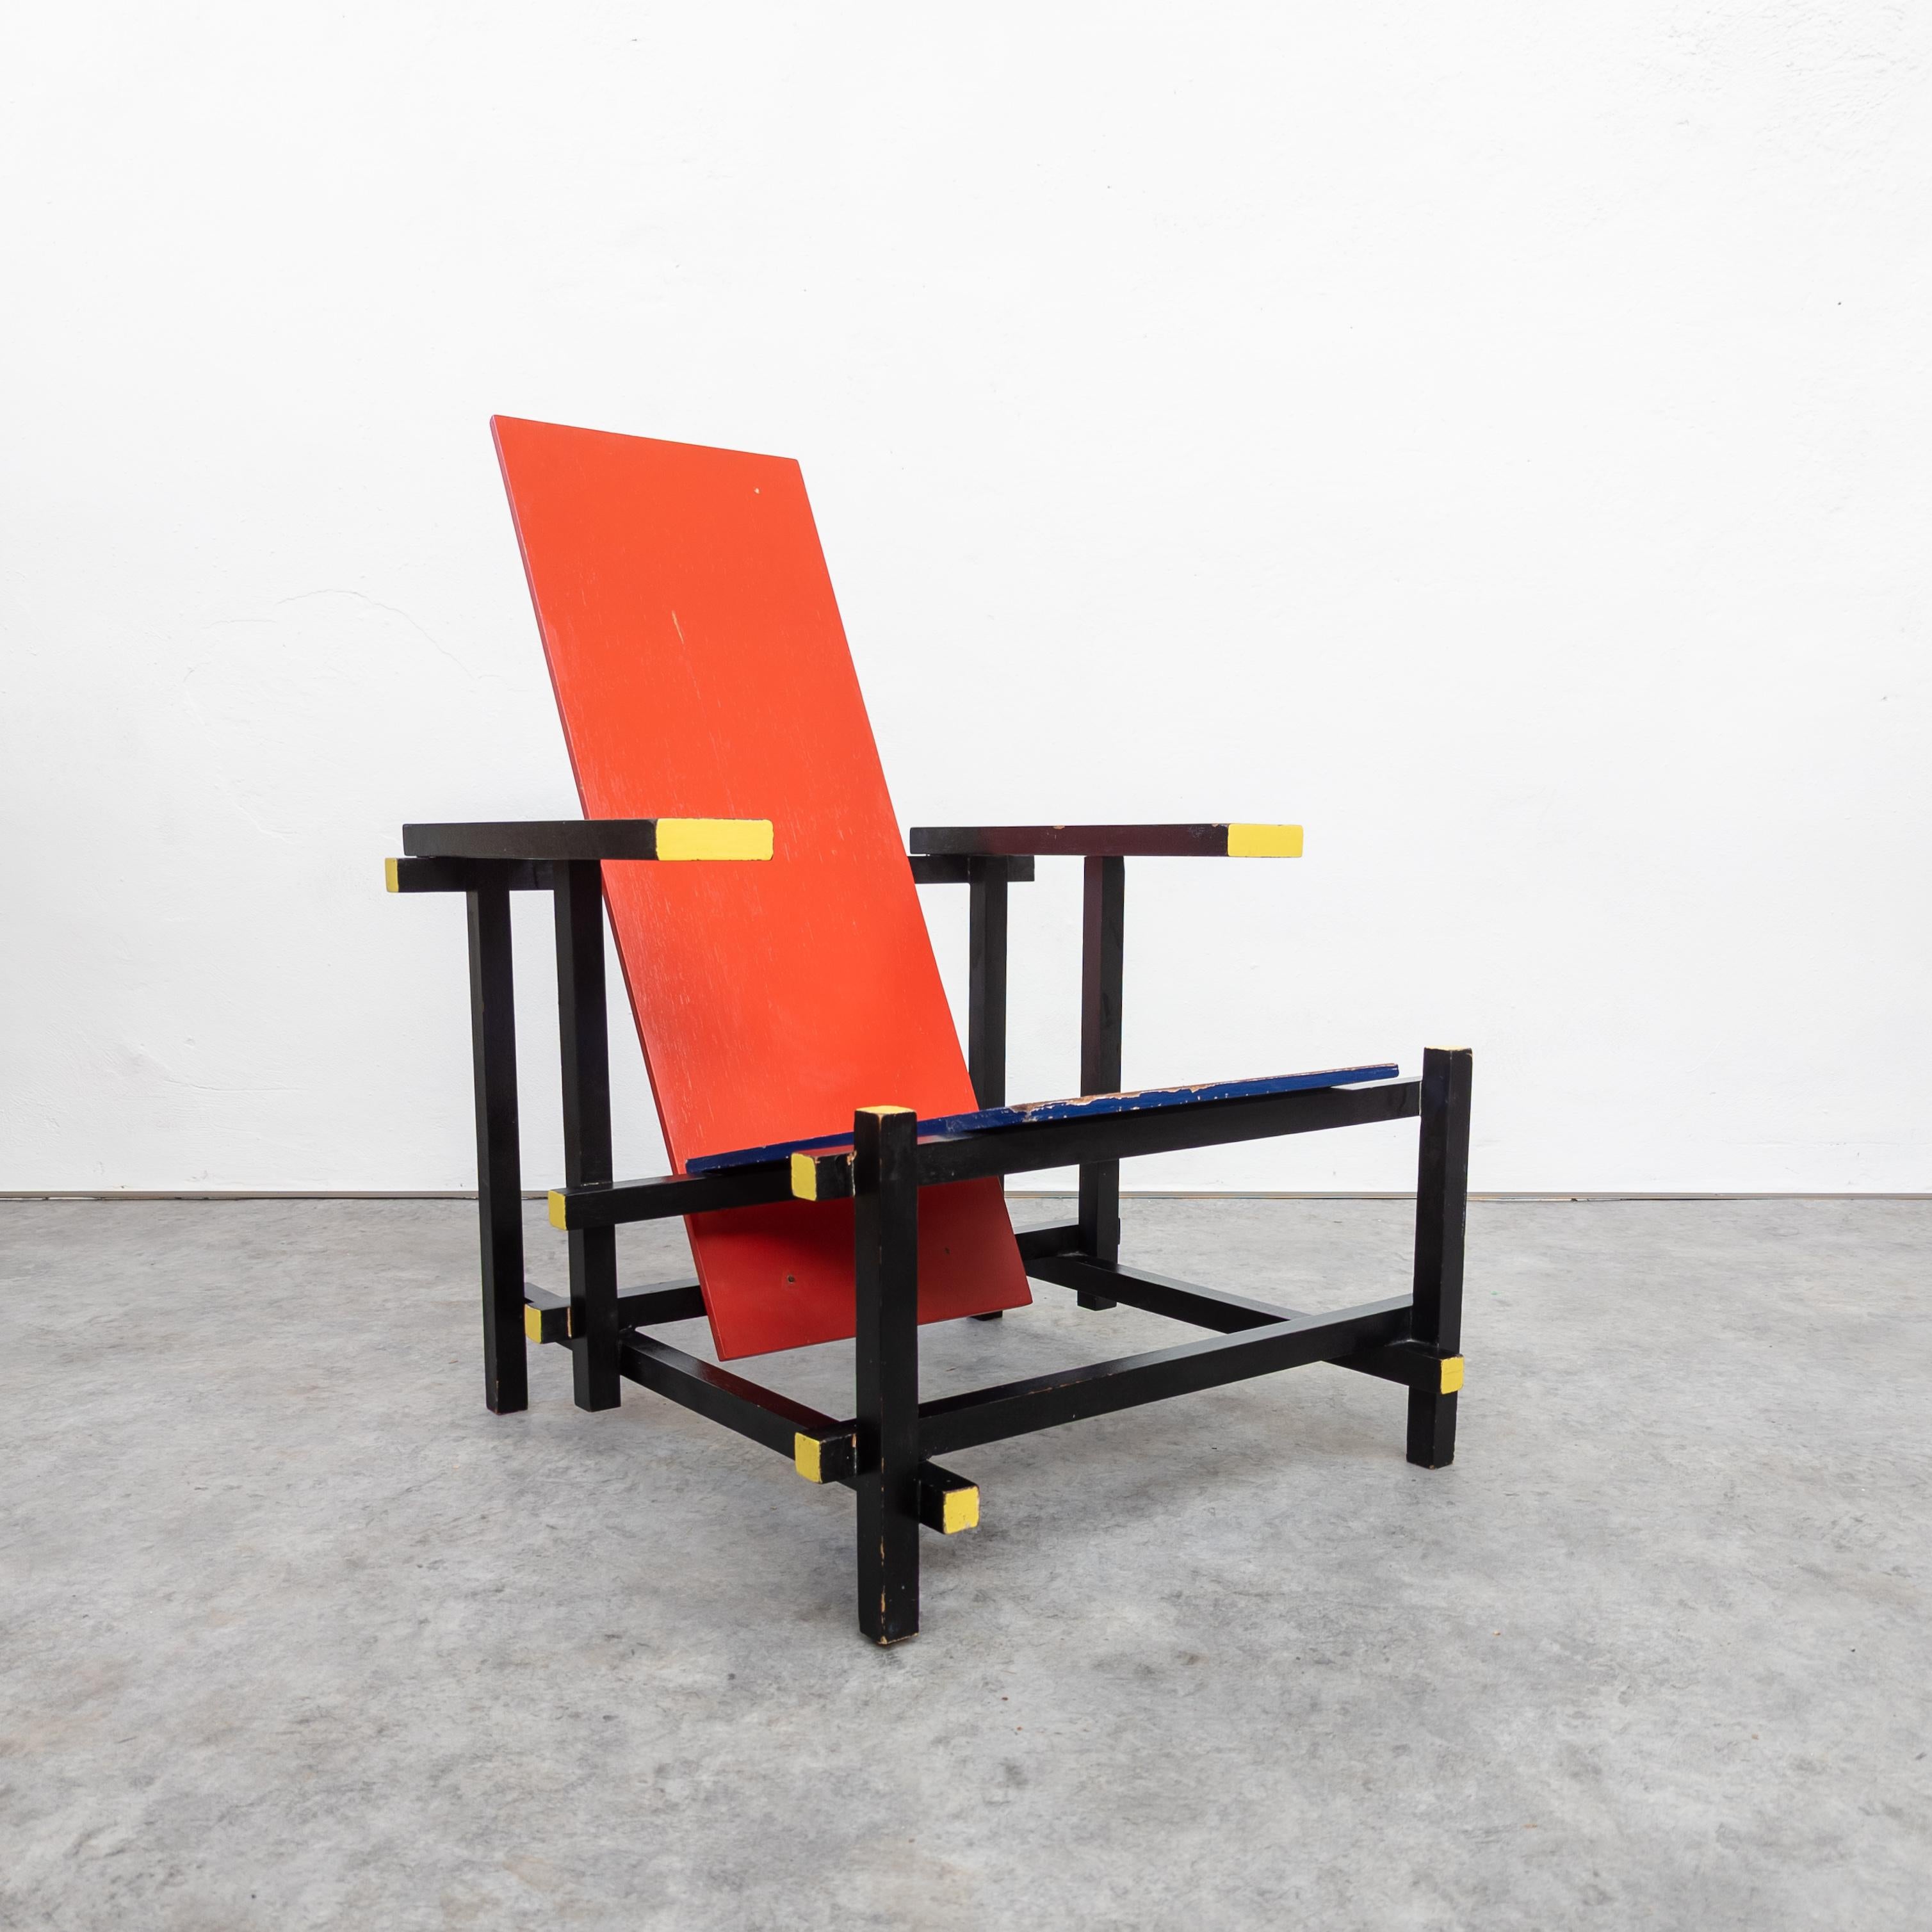 Chaise iconique conçue par l'artiste néerlandais Gerrit Rietveld entre 1918 et 1923. Cette pièce particulière date du début des années 1970. Le fabricant est inconnu, mais tous les joints et l'ensemble de l'artisanat semblent très professionnels. En